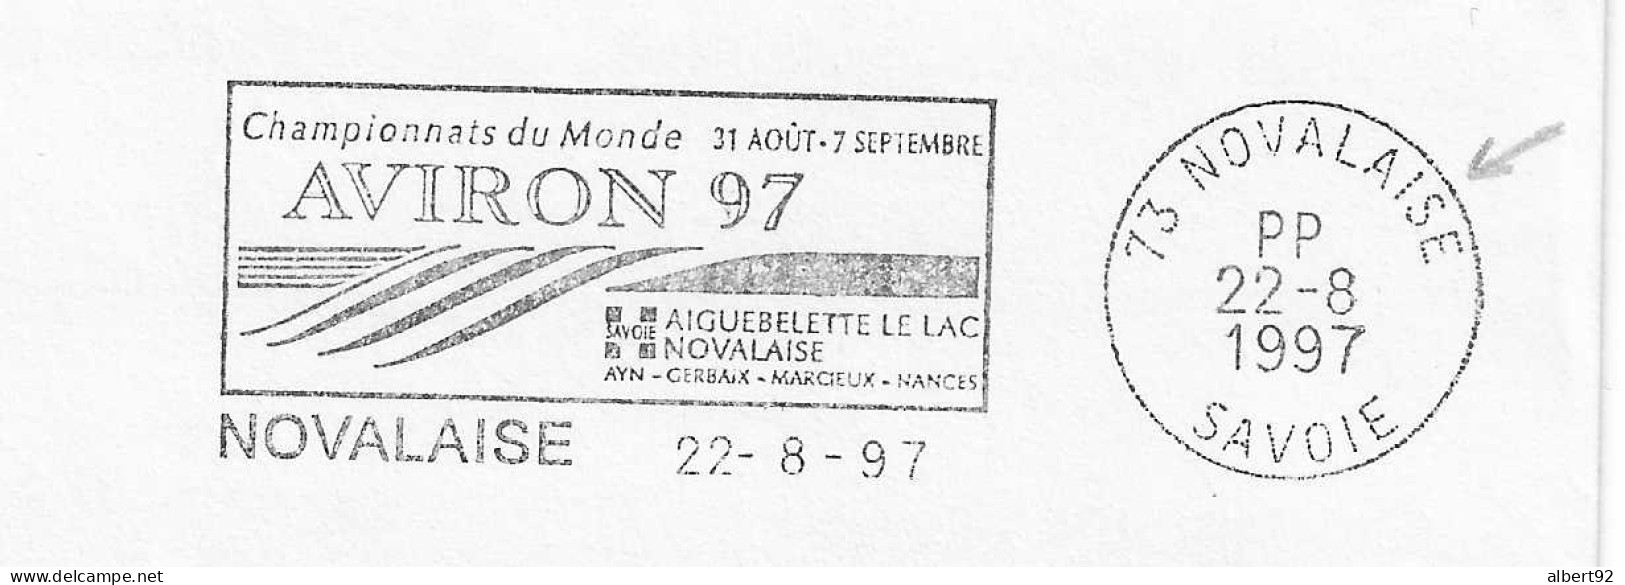 1997 Championnats Du Monde D'Aviron à Aiguebelette: Flamme Postale Port Payé (PP Dans Le Bloc Dateur) - Roeisport